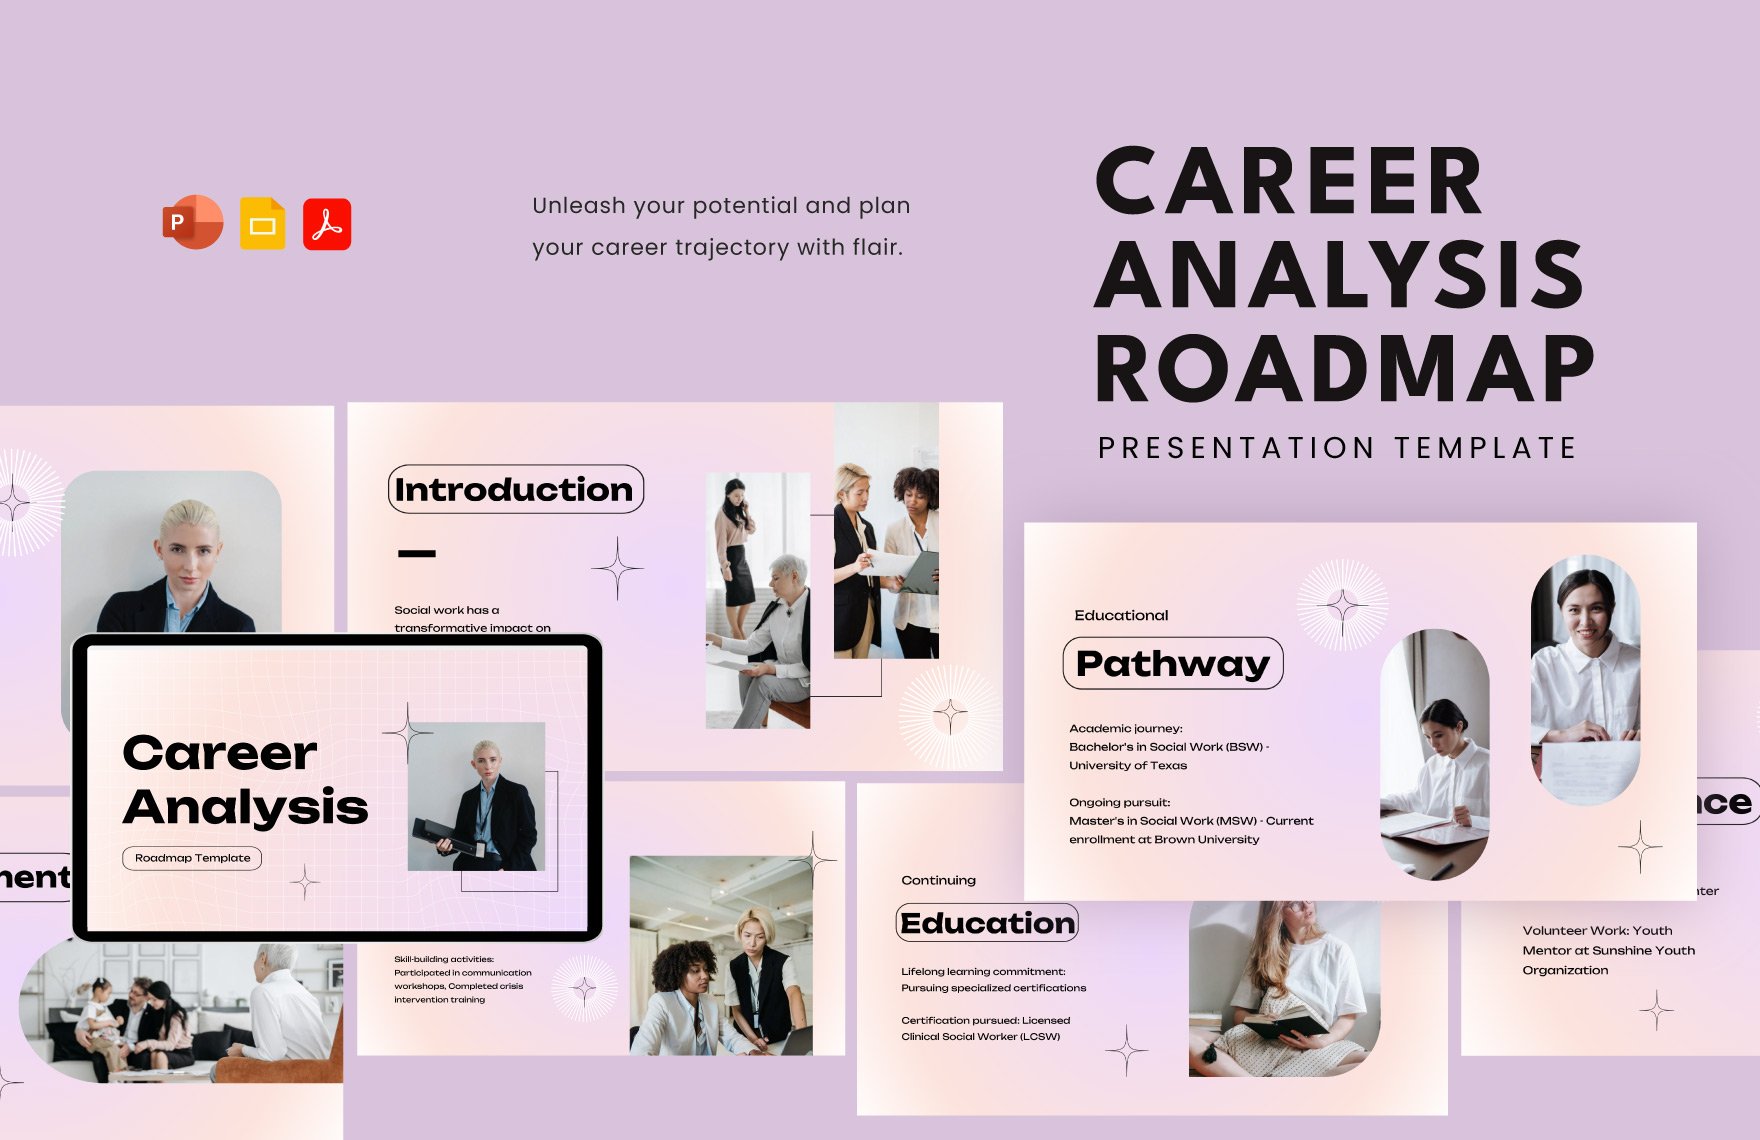 Career Analysis Roadmap Template